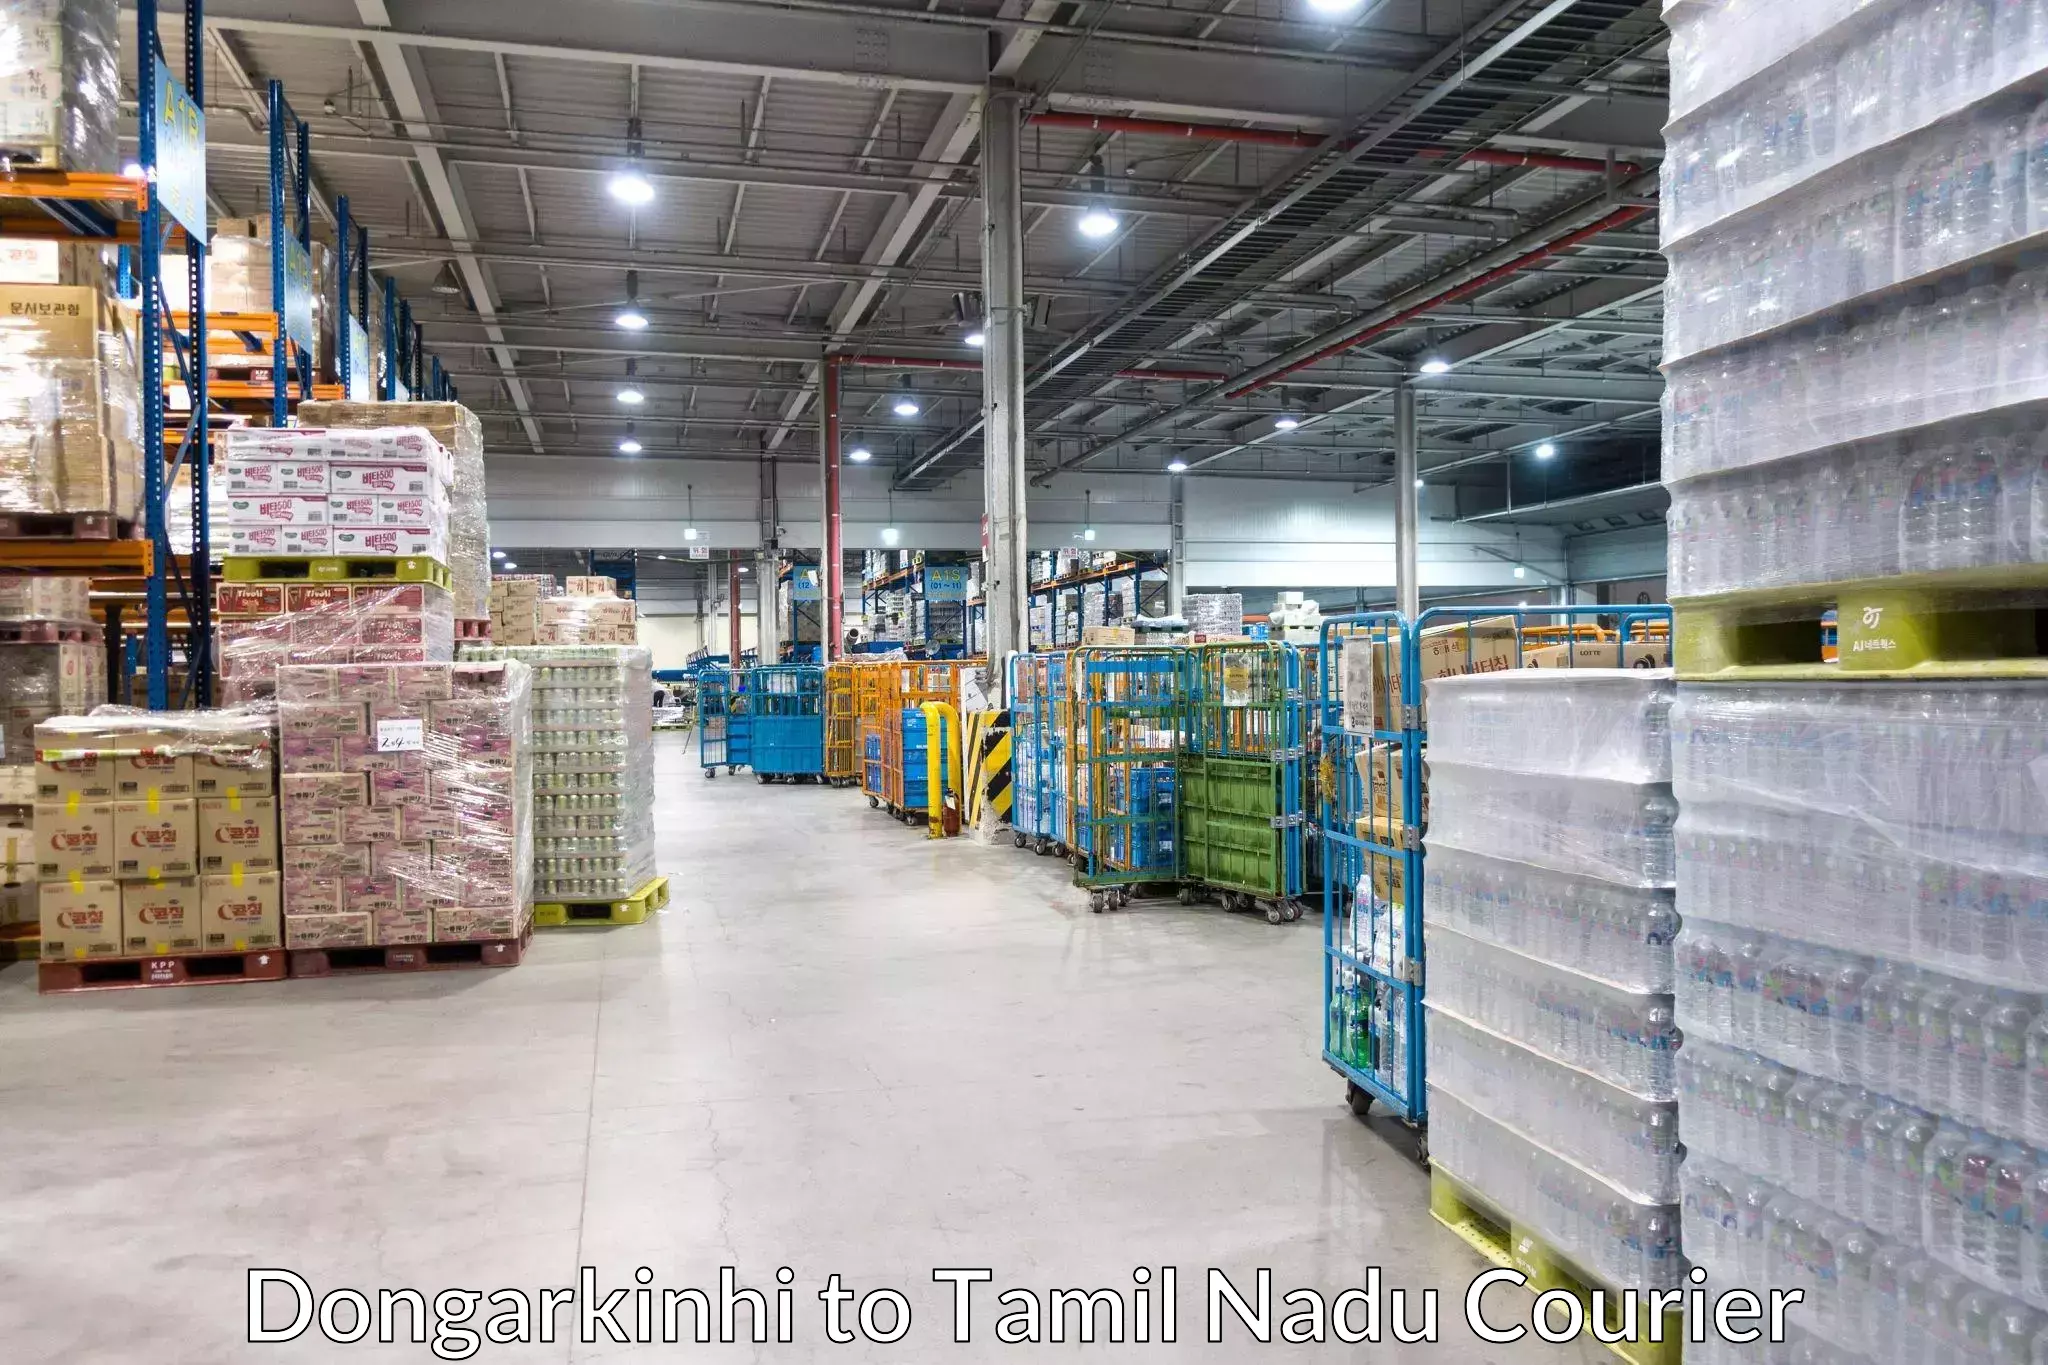 High-performance logistics Dongarkinhi to Sattur